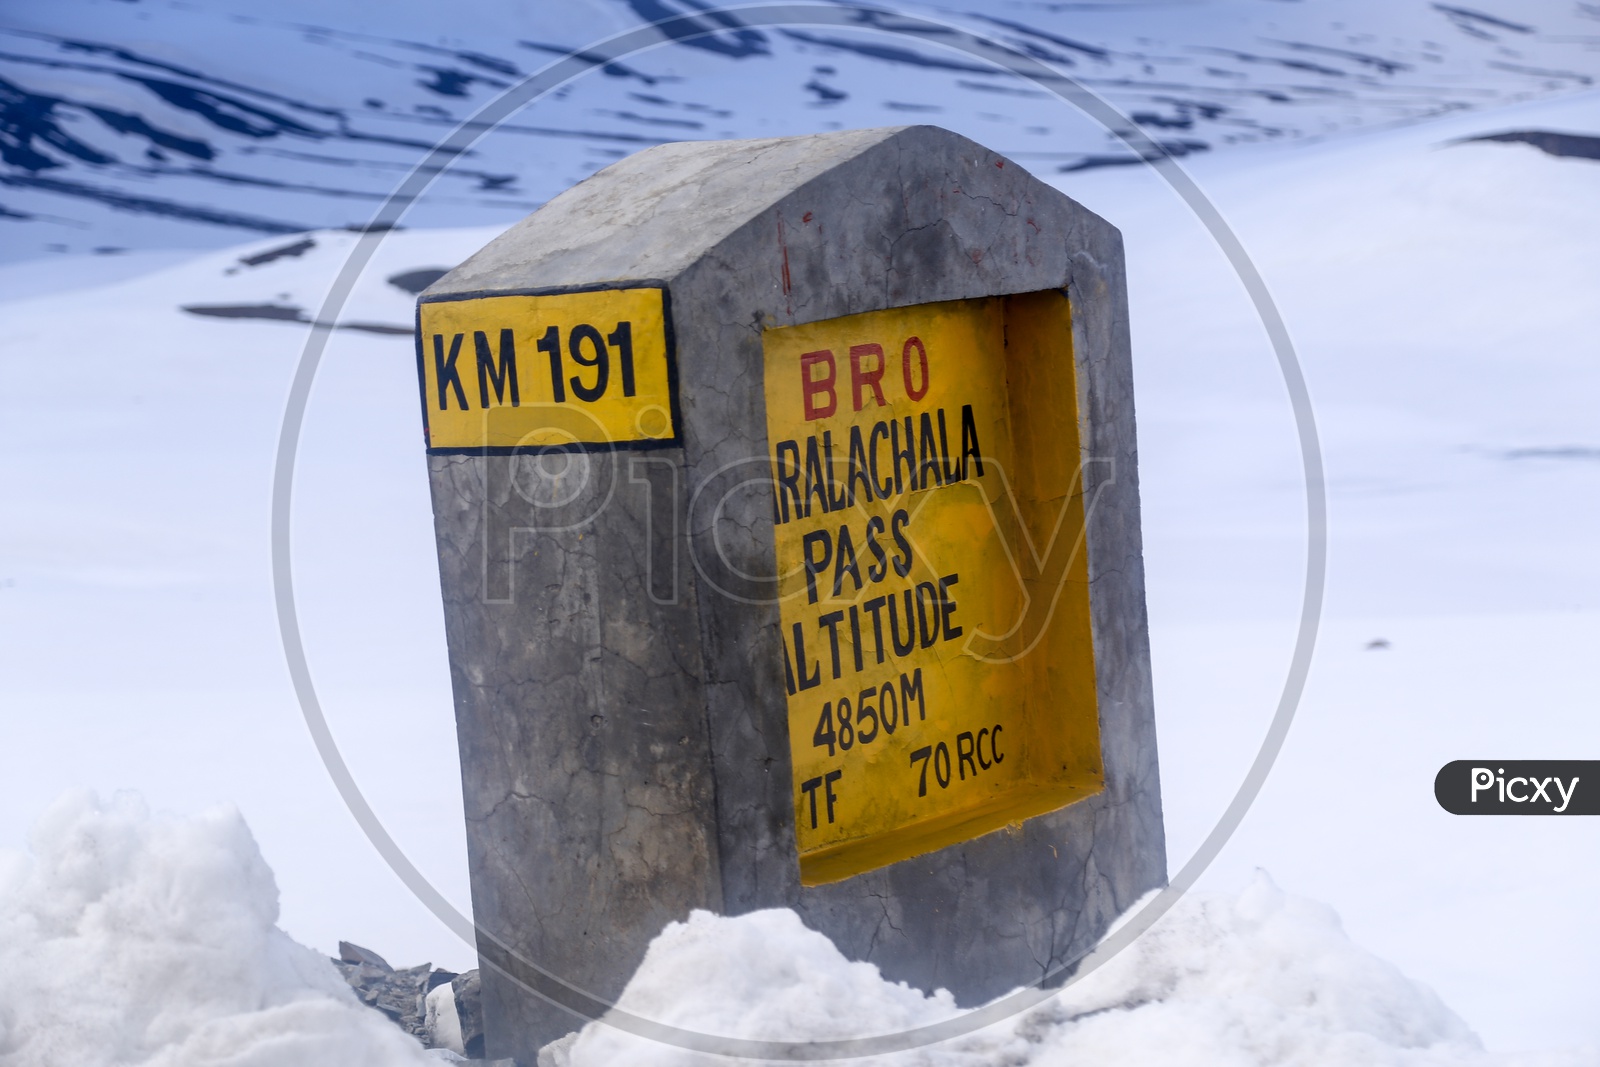 Baralacha La Pass, Altitude 4850M